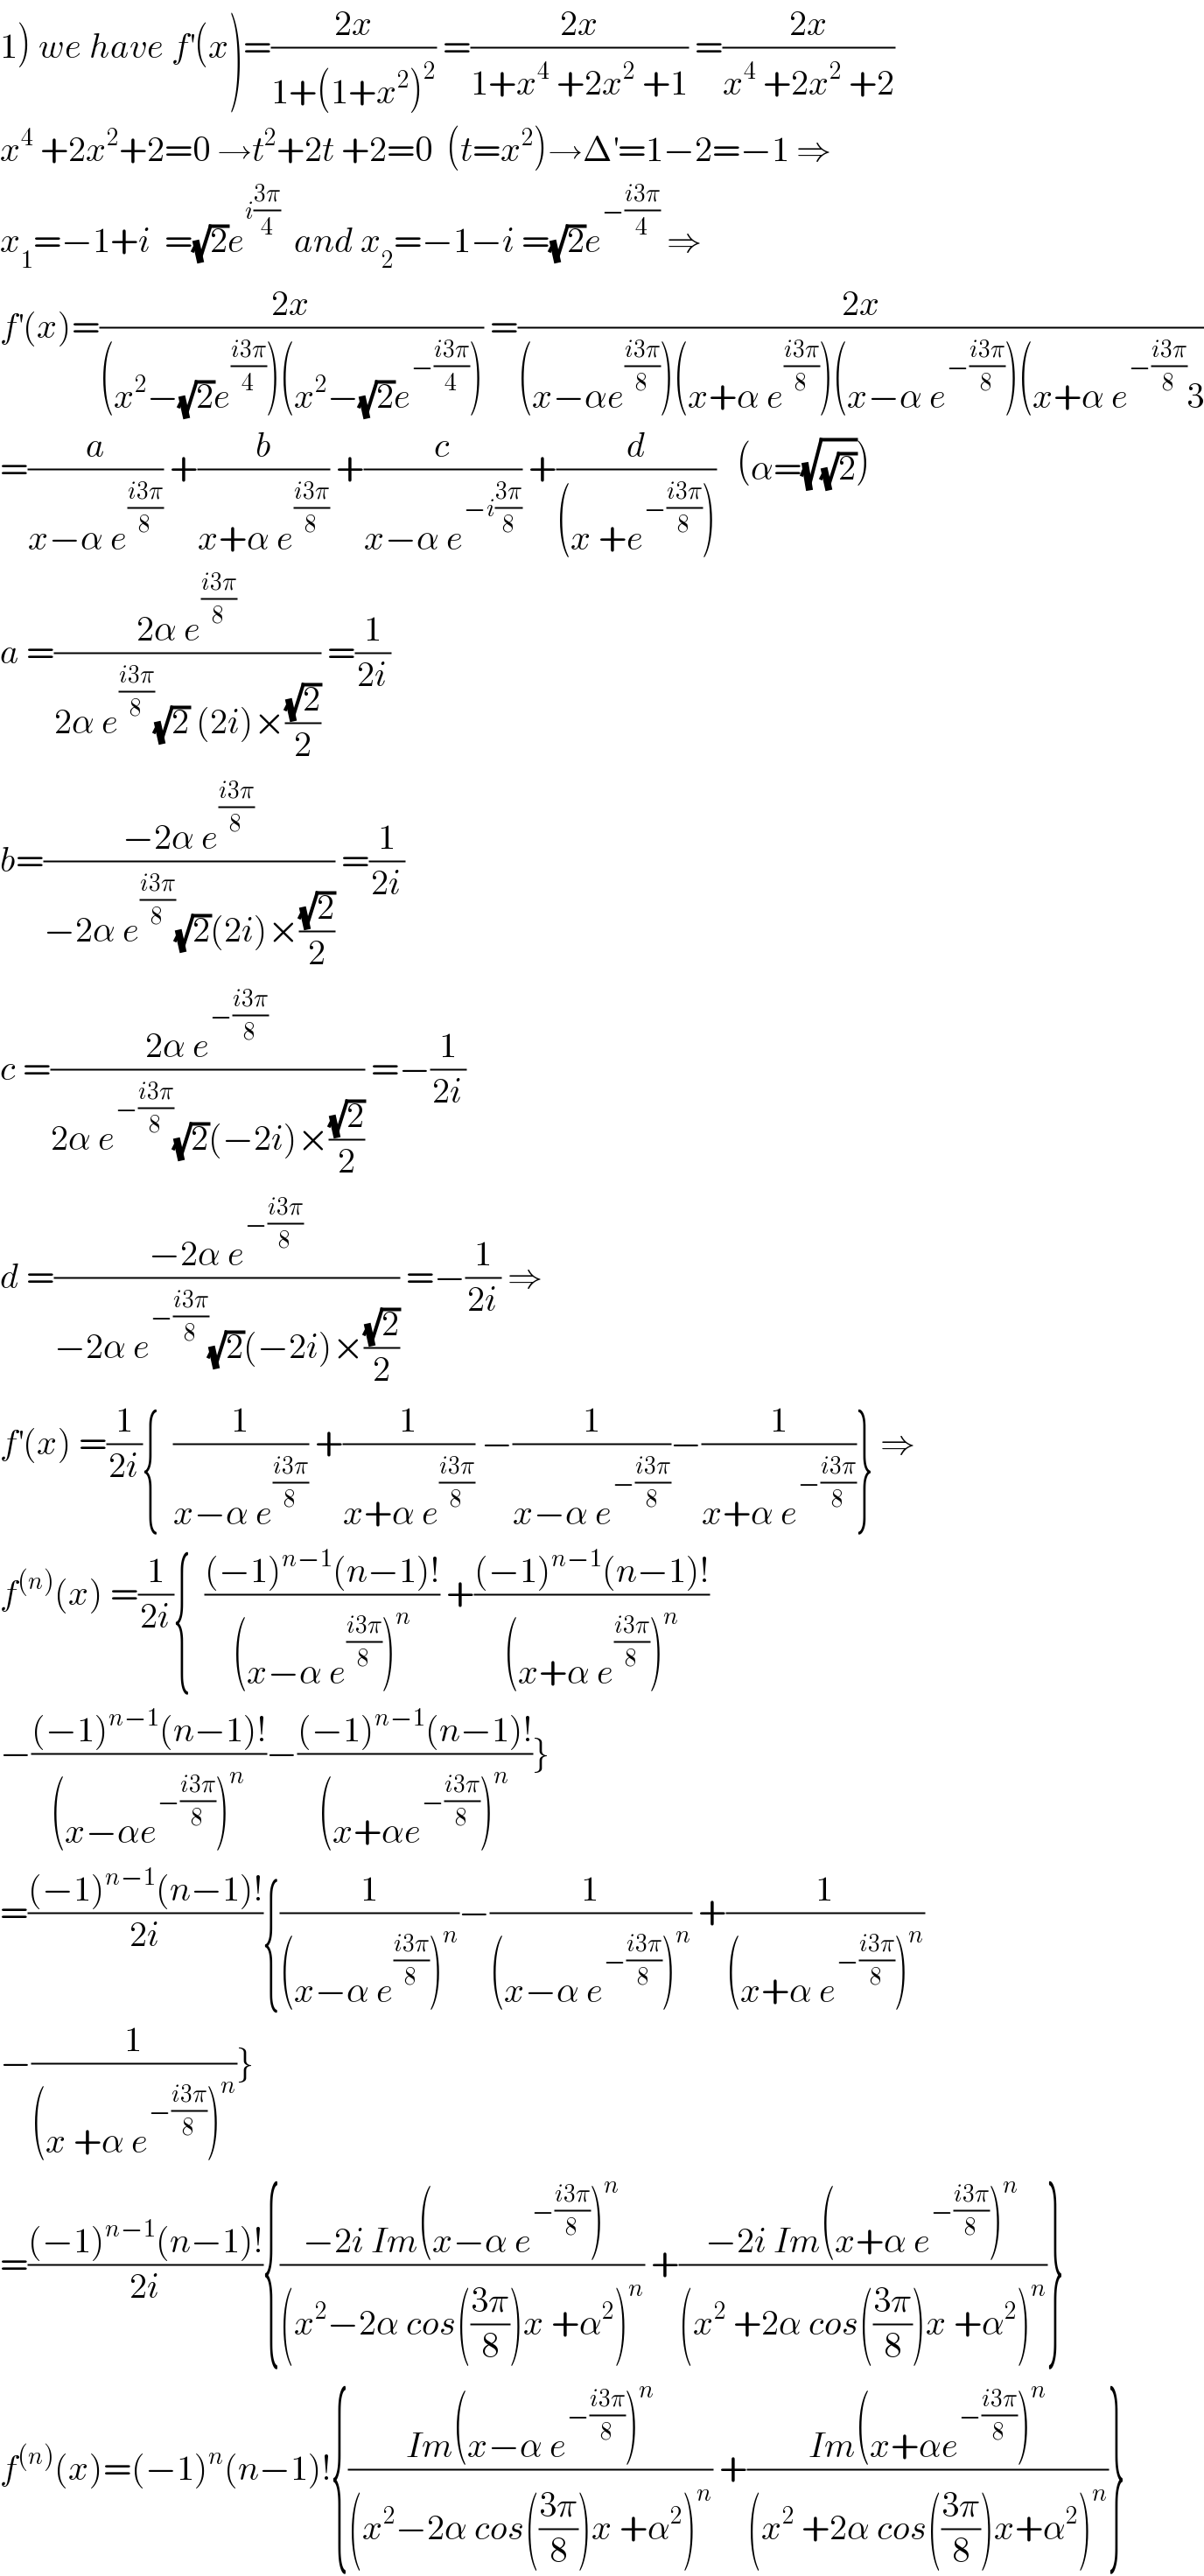 1) we have f^′ (x)=((2x)/(1+(1+x^2 )^2 )) =((2x)/(1+x^4  +2x^2  +1)) =((2x)/(x^4  +2x^2  +2))  x^4  +2x^2 +2=0 →t^2 +2t +2=0  (t=x^2 )→Δ^′ =1−2=−1 ⇒  x_1 =−1+i  =(√2)e^(i((3π)/4))   and x_2 =−1−i =(√2)e^(−((i3π)/4))  ⇒  f^′ (x)=((2x)/((x^2 −(√2)e^((i3π)/4) )(x^2 −(√2)e^(−((i3π)/4)) ))) =((2x)/((x−αe^((i3π)/8) )(x+α e^((i3π)/8) )(x−α e^(−((i3π)/8)) )(x+α e^(−((i3π)/8)) 3))  =(a/(x−α e^((i3π)/8) )) +(b/(x+α e^((i3π)/8) )) +(c/(x−α e^(−i((3π)/8)) )) +(d/((x +e^(−((i3π)/8)) )))   (α=(√(√2)))  a =((2α e^((i3π)/8) )/(2α e^((i3π)/8) (√2) (2i)×((√2)/2))) =(1/(2i))  b=((−2α e^((i3π)/8) )/(−2α e^((i3π)/8) (√2)(2i)×((√2)/2))) =(1/(2i))  c =((2α e^(−((i3π)/8)) )/(2α e^(−((i3π)/8)) (√2)(−2i)×((√2)/2))) =−(1/(2i))  d =((−2α e^(−((i3π)/8)) )/(−2α e^(−((i3π)/8)) (√2)(−2i)×((√2)/2))) =−(1/(2i)) ⇒  f^′ (x) =(1/(2i)){  (1/(x−α e^((i3π)/8) )) +(1/(x+α e^((i3π)/8) )) −(1/(x−α e^(−((i3π)/8)) ))−(1/(x+α e^(−((i3π)/8)) ))} ⇒  f^((n)) (x) =(1/(2i)){  (((−1)^(n−1) (n−1)!)/((x−α e^((i3π)/8) )^n )) +(((−1)^(n−1) (n−1)!)/((x+α e^((i3π)/8) )^n ))  −(((−1)^(n−1) (n−1)!)/((x−αe^(−((i3π)/8)) )^n ))−(((−1)^(n−1) (n−1)!)/((x+αe^(−((i3π)/8)) )^n ))}  =(((−1)^(n−1) (n−1)!)/(2i)){(1/((x−α e^((i3π)/8) )^n ))−(1/((x−α e^(−((i3π)/8)) )^n )) +(1/((x+α e^(−((i3π)/8)) )^n ))  −(1/((x +α e^(−((i3π)/8)) )^n ))}  =(((−1)^(n−1) (n−1)!)/(2i)){((−2i Im(x−α e^(−((i3π)/8)) )^n )/((x^2 −2α cos(((3π)/8))x +α^2 )^n )) +((−2i Im(x+α e^(−((i3π)/8)) )^n )/((x^2  +2α cos(((3π)/8))x +α^2 )^n ))}  f^((n)) (x)=(−1)^n (n−1)!{((Im(x−α e^(−((i3π)/8)) )^n )/((x^2 −2α cos(((3π)/8))x +α^2 )^n )) +((Im(x+αe^(−((i3π)/8)) )^n )/((x^2  +2α cos(((3π)/8))x+α^2 )^n ))}  